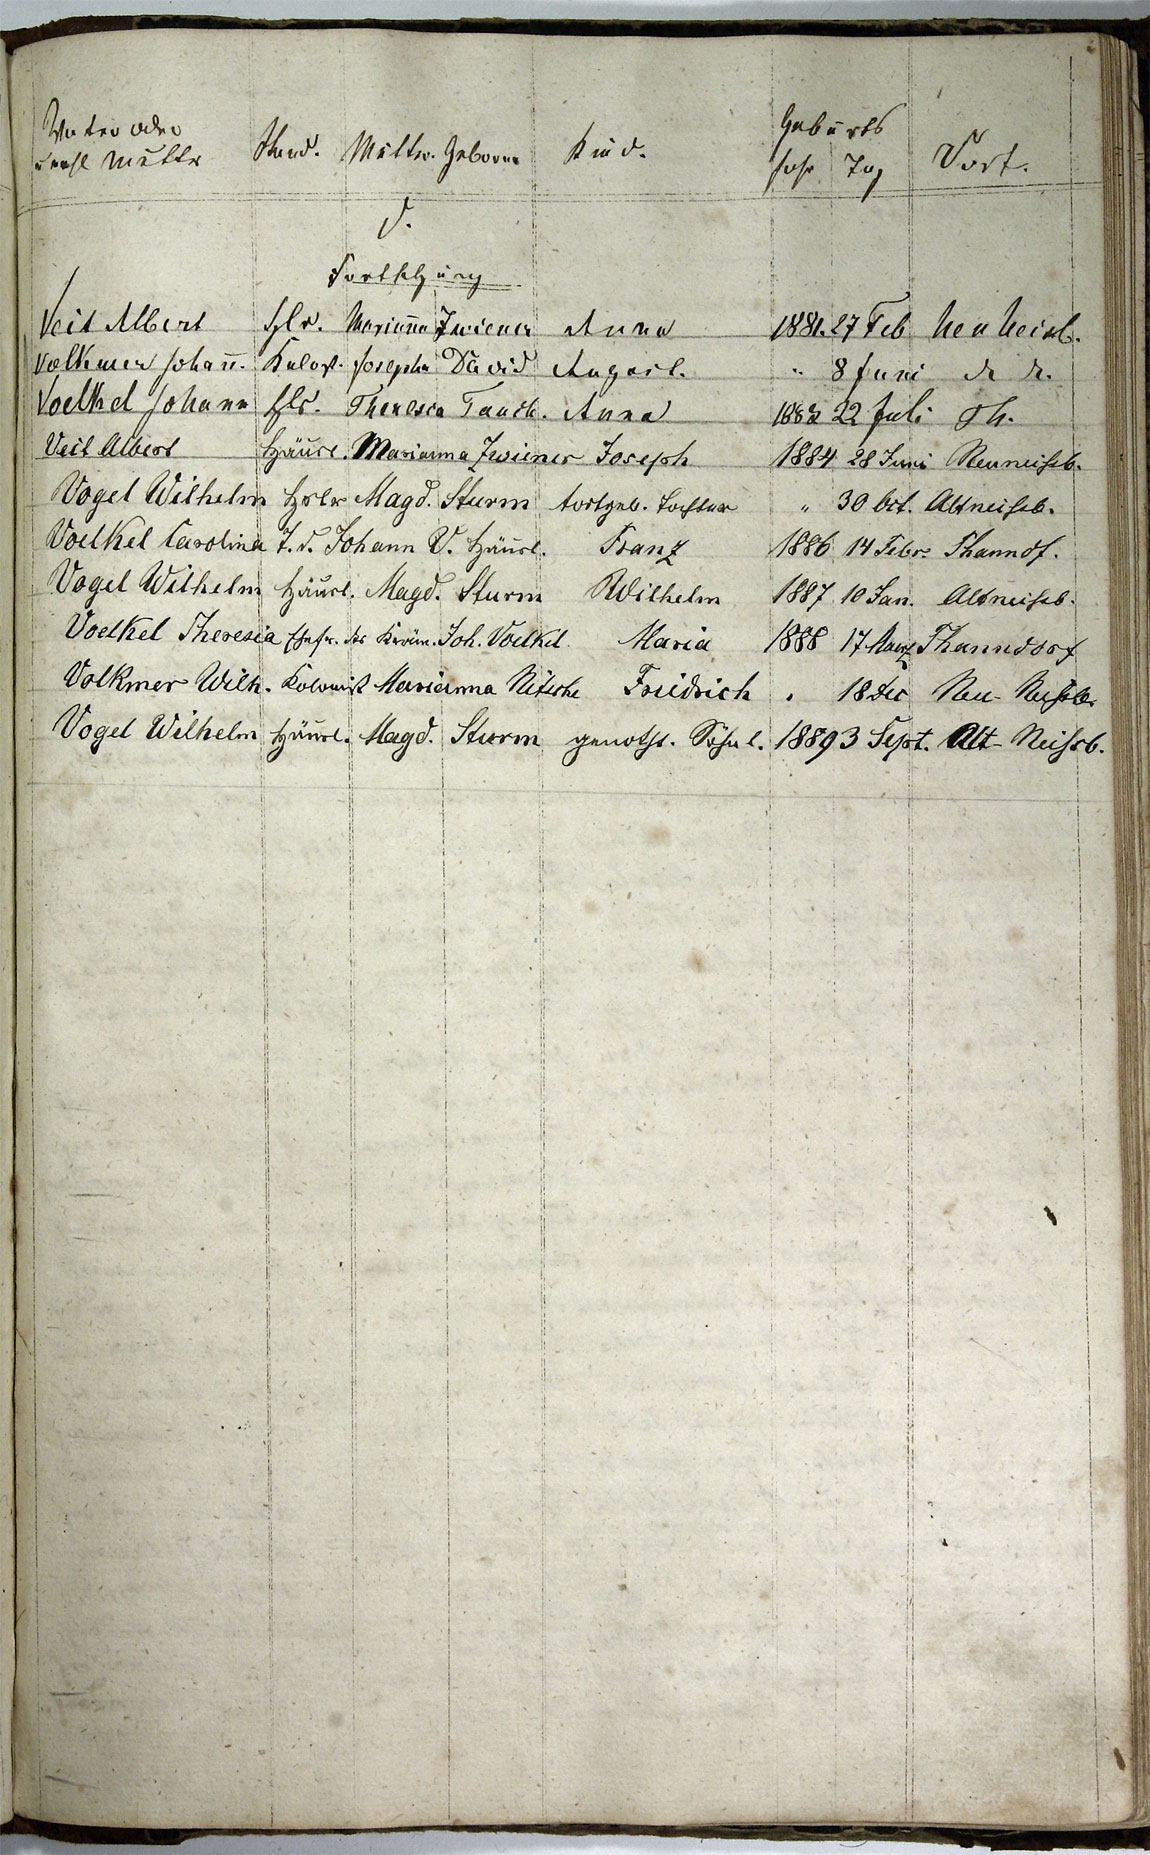 Taufregister 1770 - 1889 Seite 166